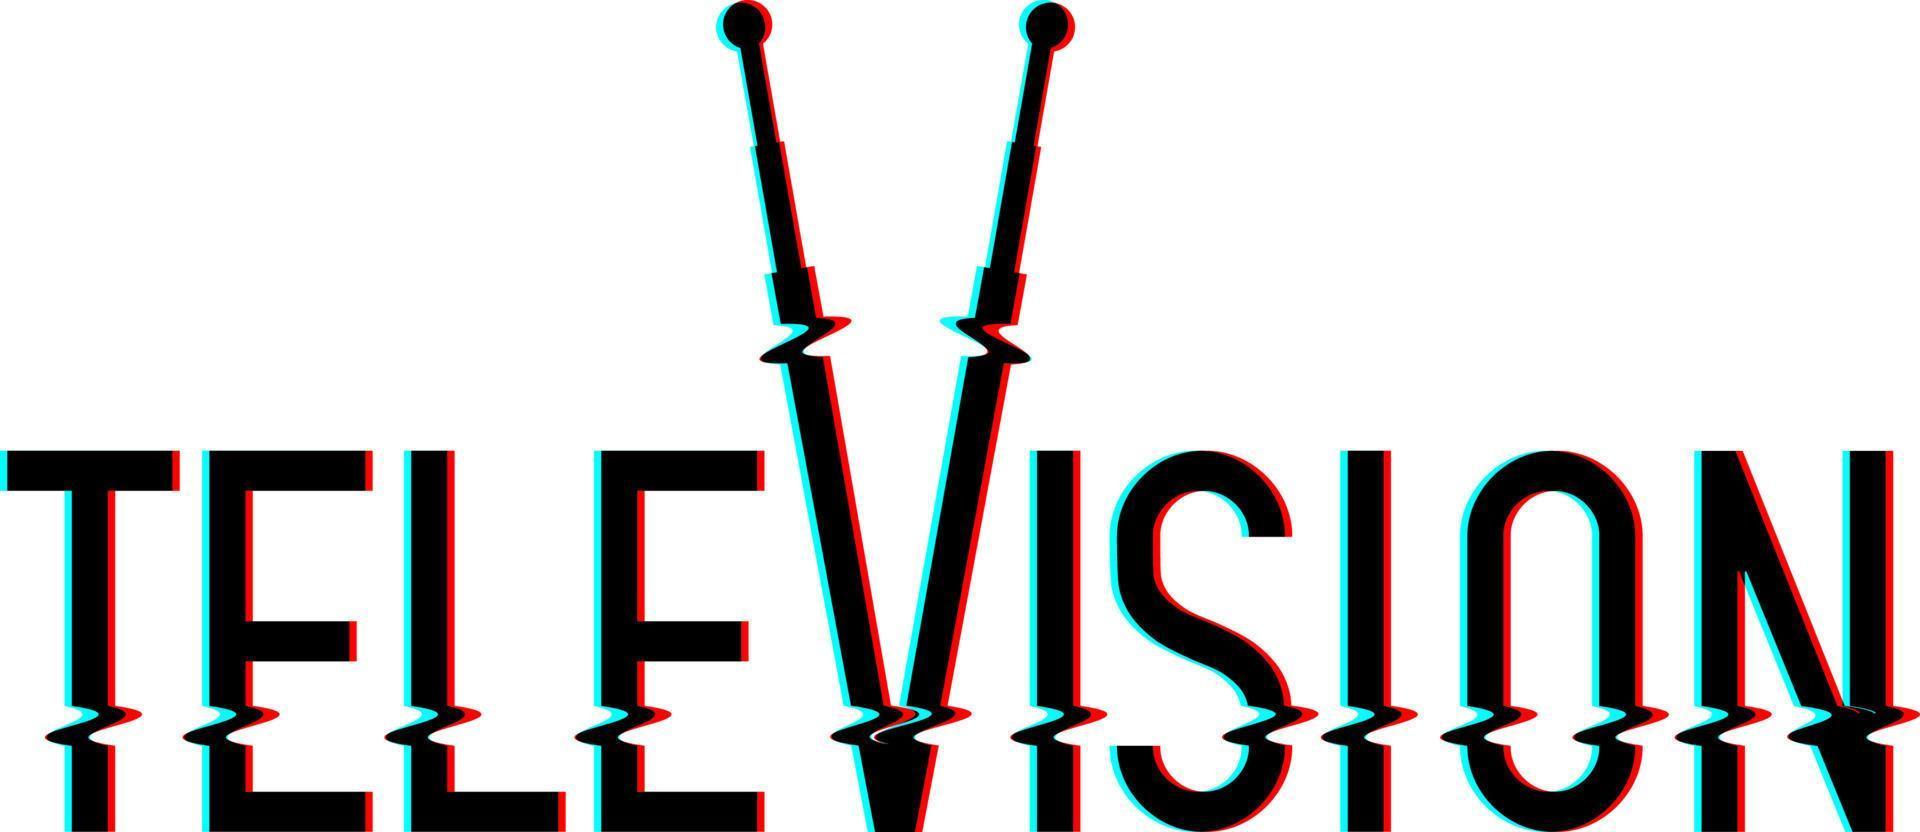 il design del logo vettoriale televisivo